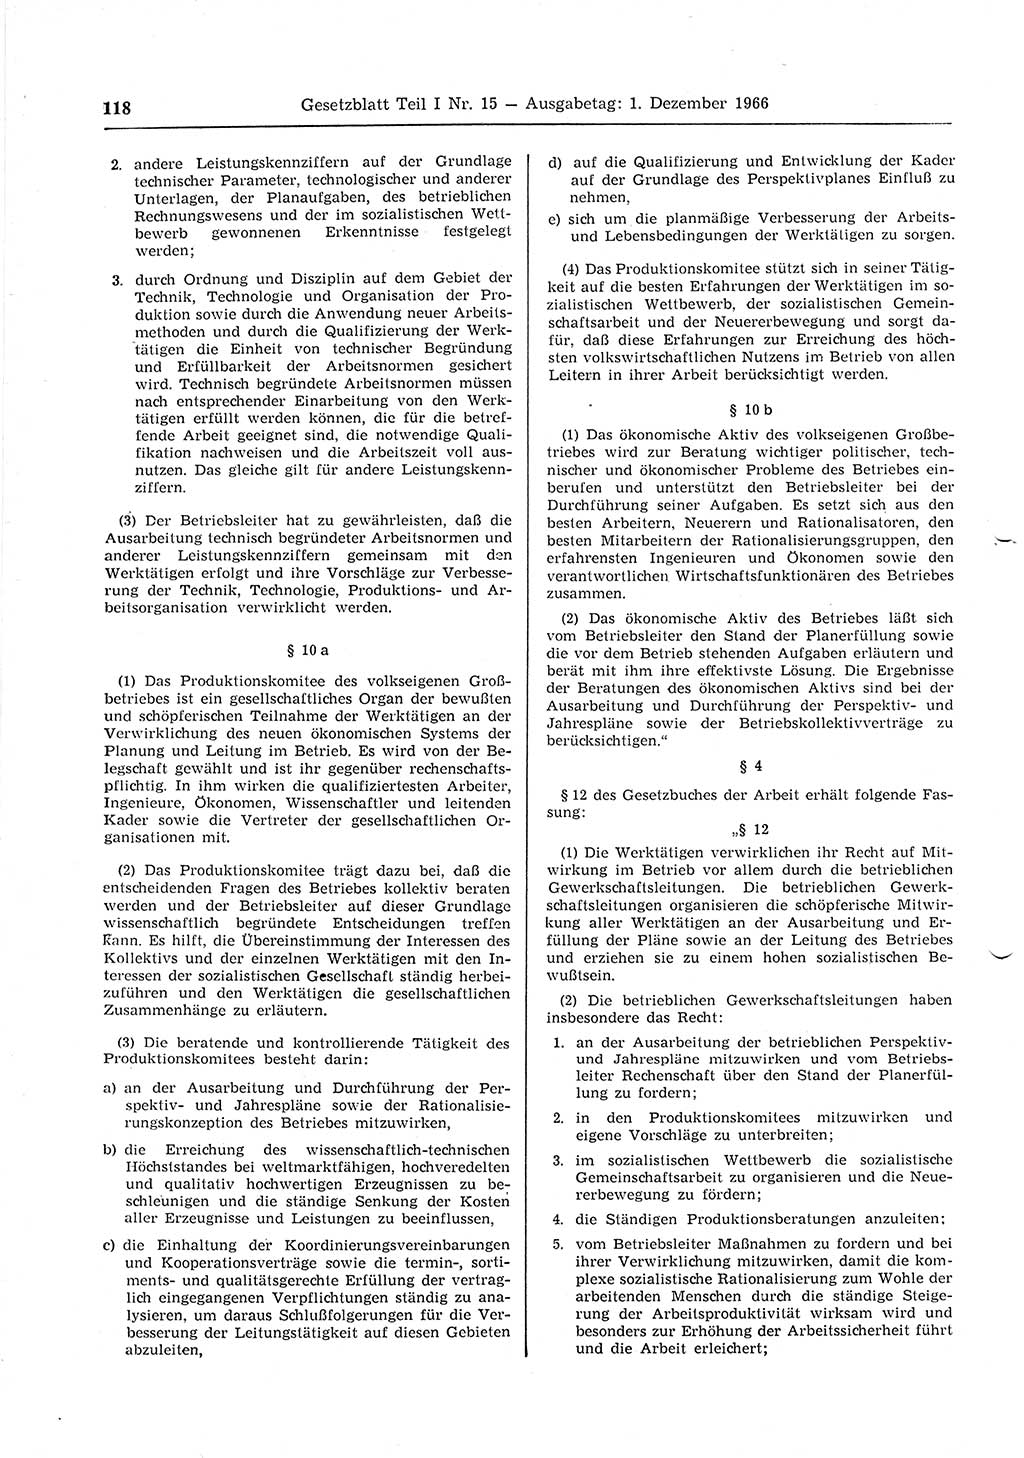 Gesetzblatt (GBl.) der Deutschen Demokratischen Republik (DDR) Teil Ⅰ 1966, Seite 118 (GBl. DDR Ⅰ 1966, S. 118)